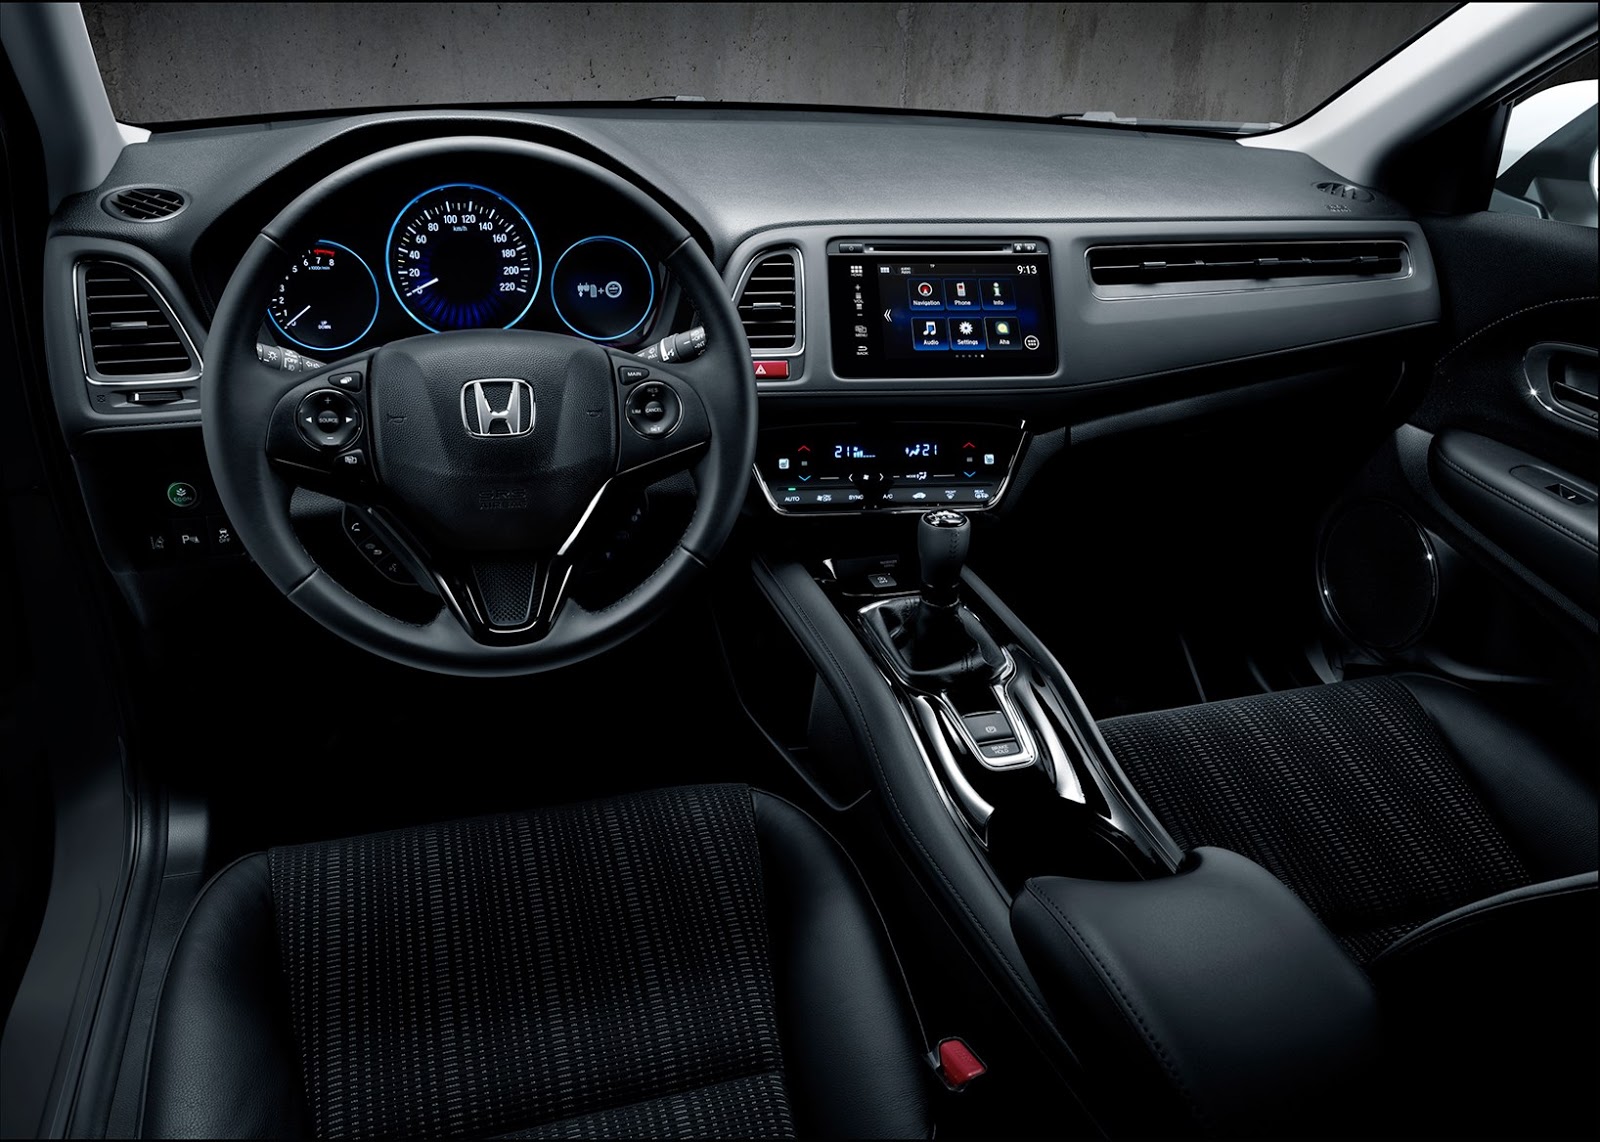 Spesifikasi Dan Harga Honda HRV Terbaru 2016 Spesifikasi Dan